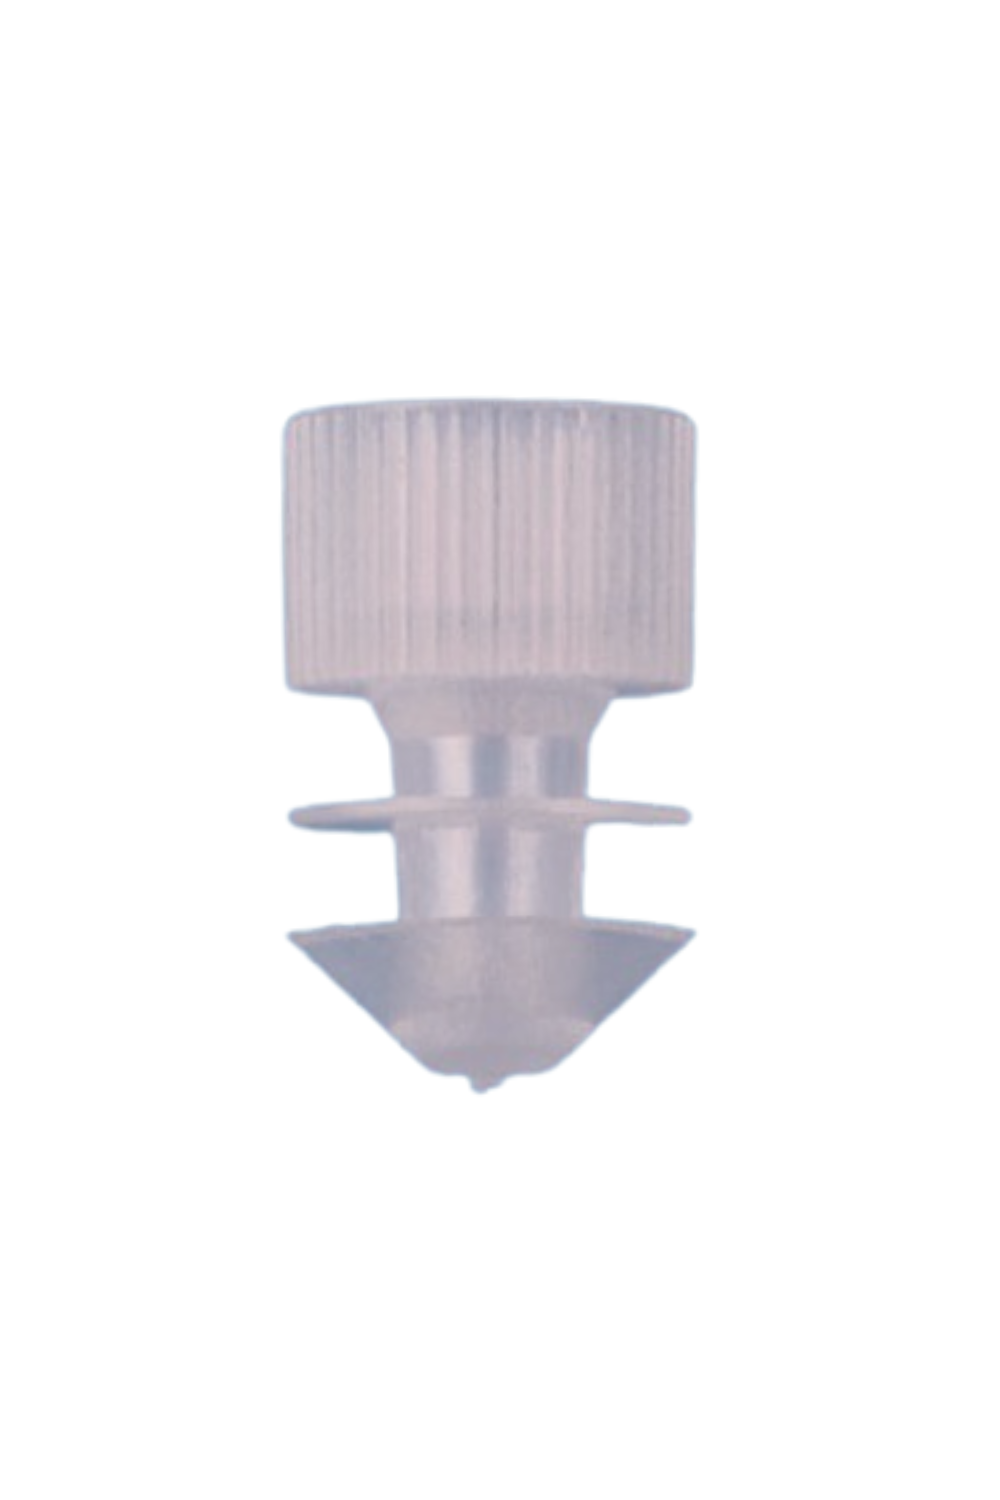 Push Cap for 12mm Test tube (Bag of 1,000) (405/BOT)